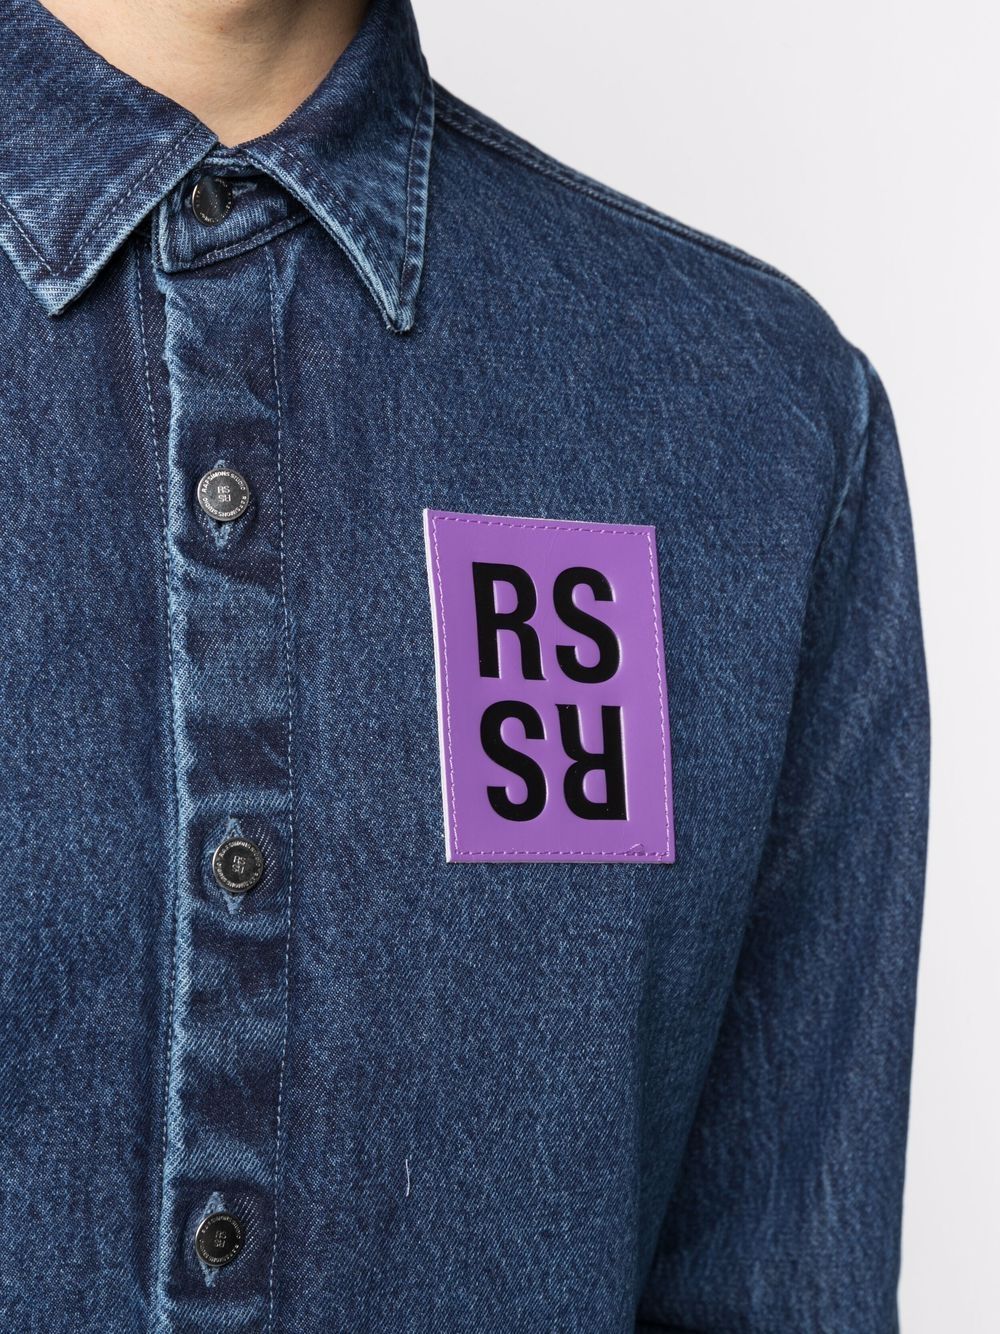 фото Raf simons джинсовая рубашка с нашивкой-логотипом